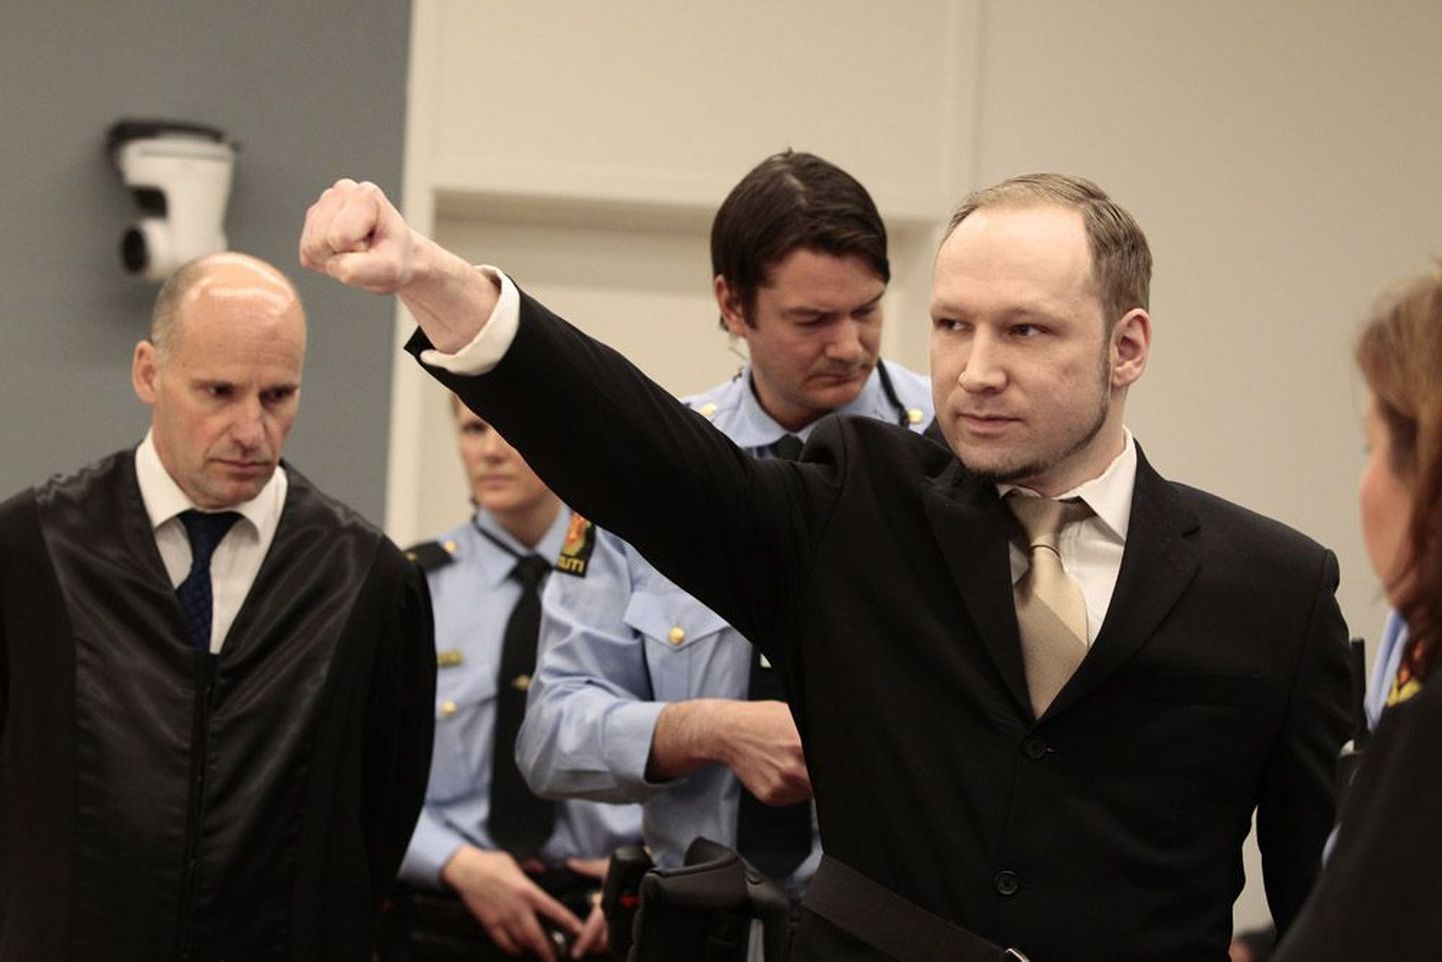 Anders Behring Breivik tõstis eile Oslo kohtusaali saabudes rusikasse surutud parema käe. Tema internetimanifesti sõnul on tegemist Templirüütlite ordu tervitusega. Norra võimude sõnul säärast rühmitust olemas ei ole.